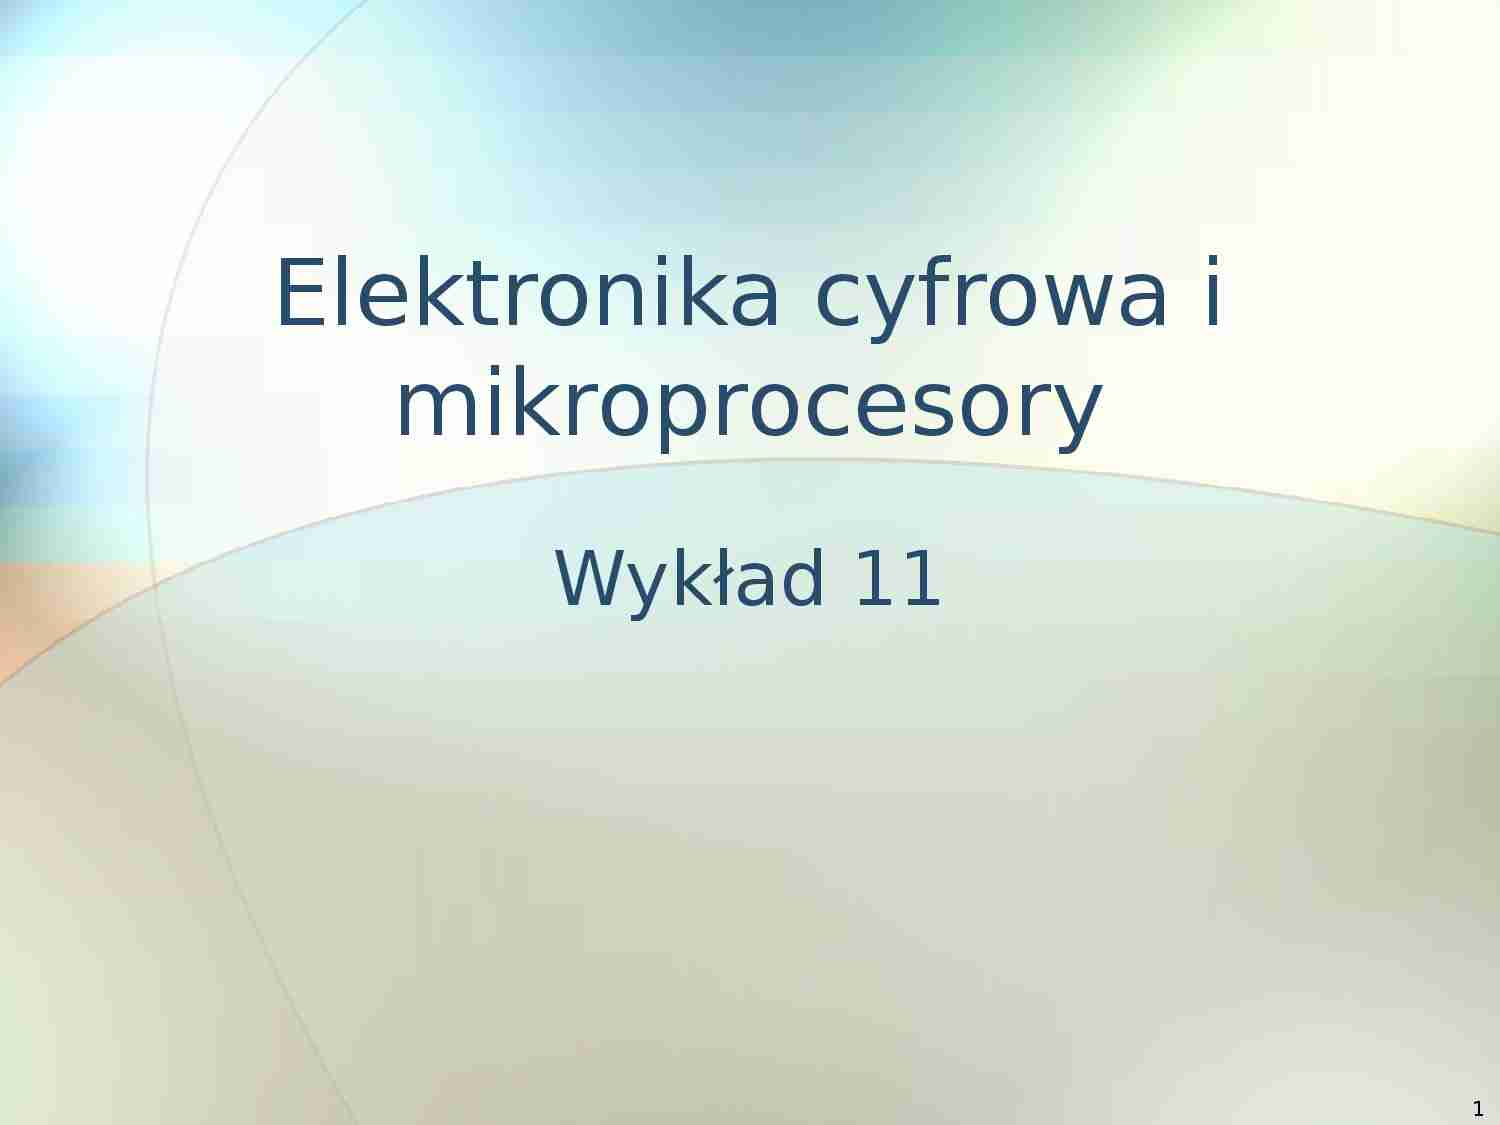 Elektronika cyfrowa i mikroprocesory  - wykład 11 - strona 1